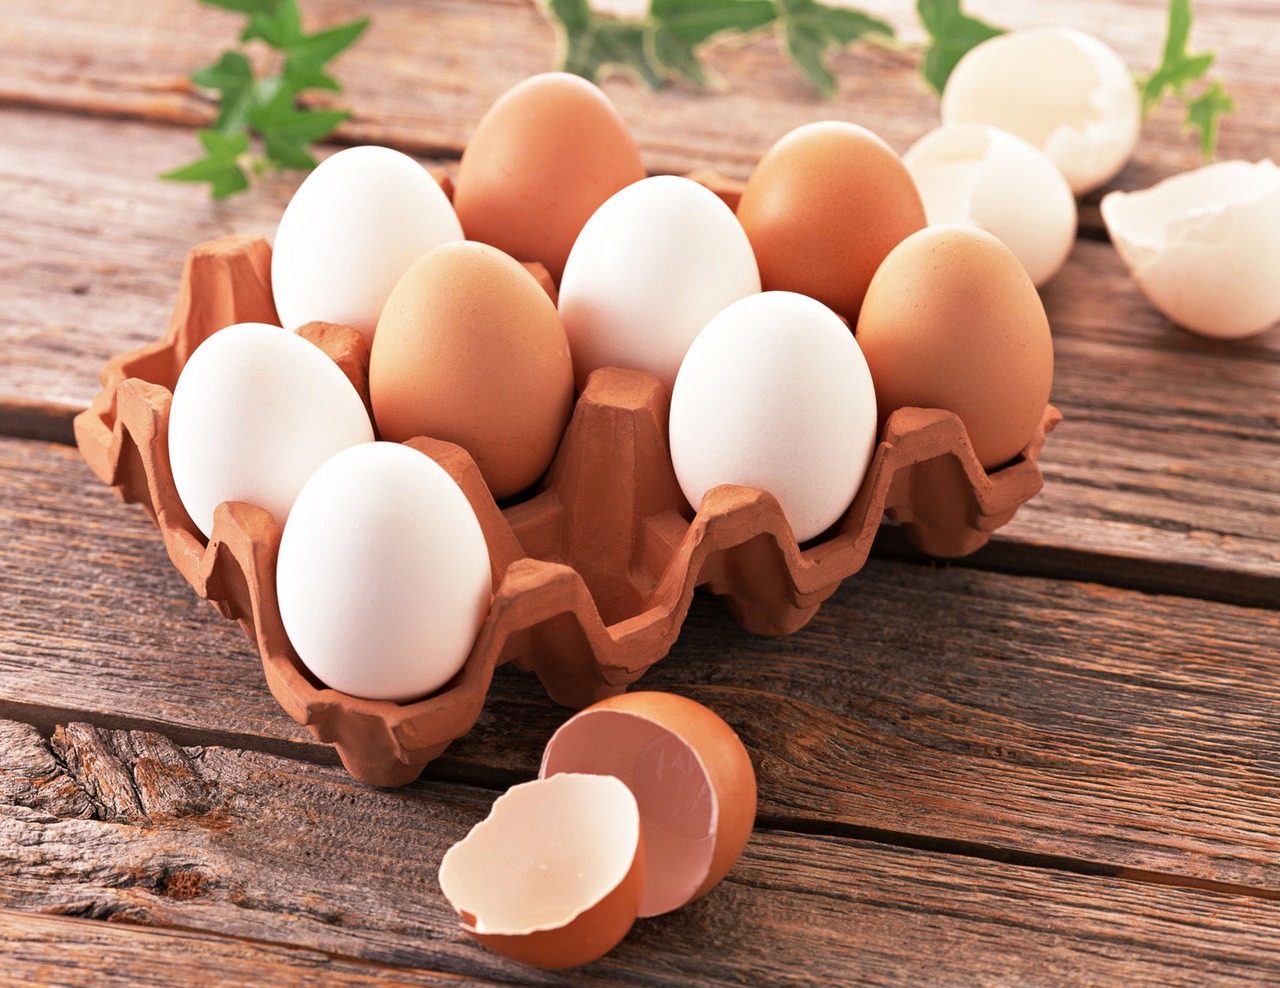 Назначение и проведение ветеринарно-санитарной экспертизы яиц сельскохозяйственных птиц и яйцепродукции с 1 марта осуществляются по новым правилам